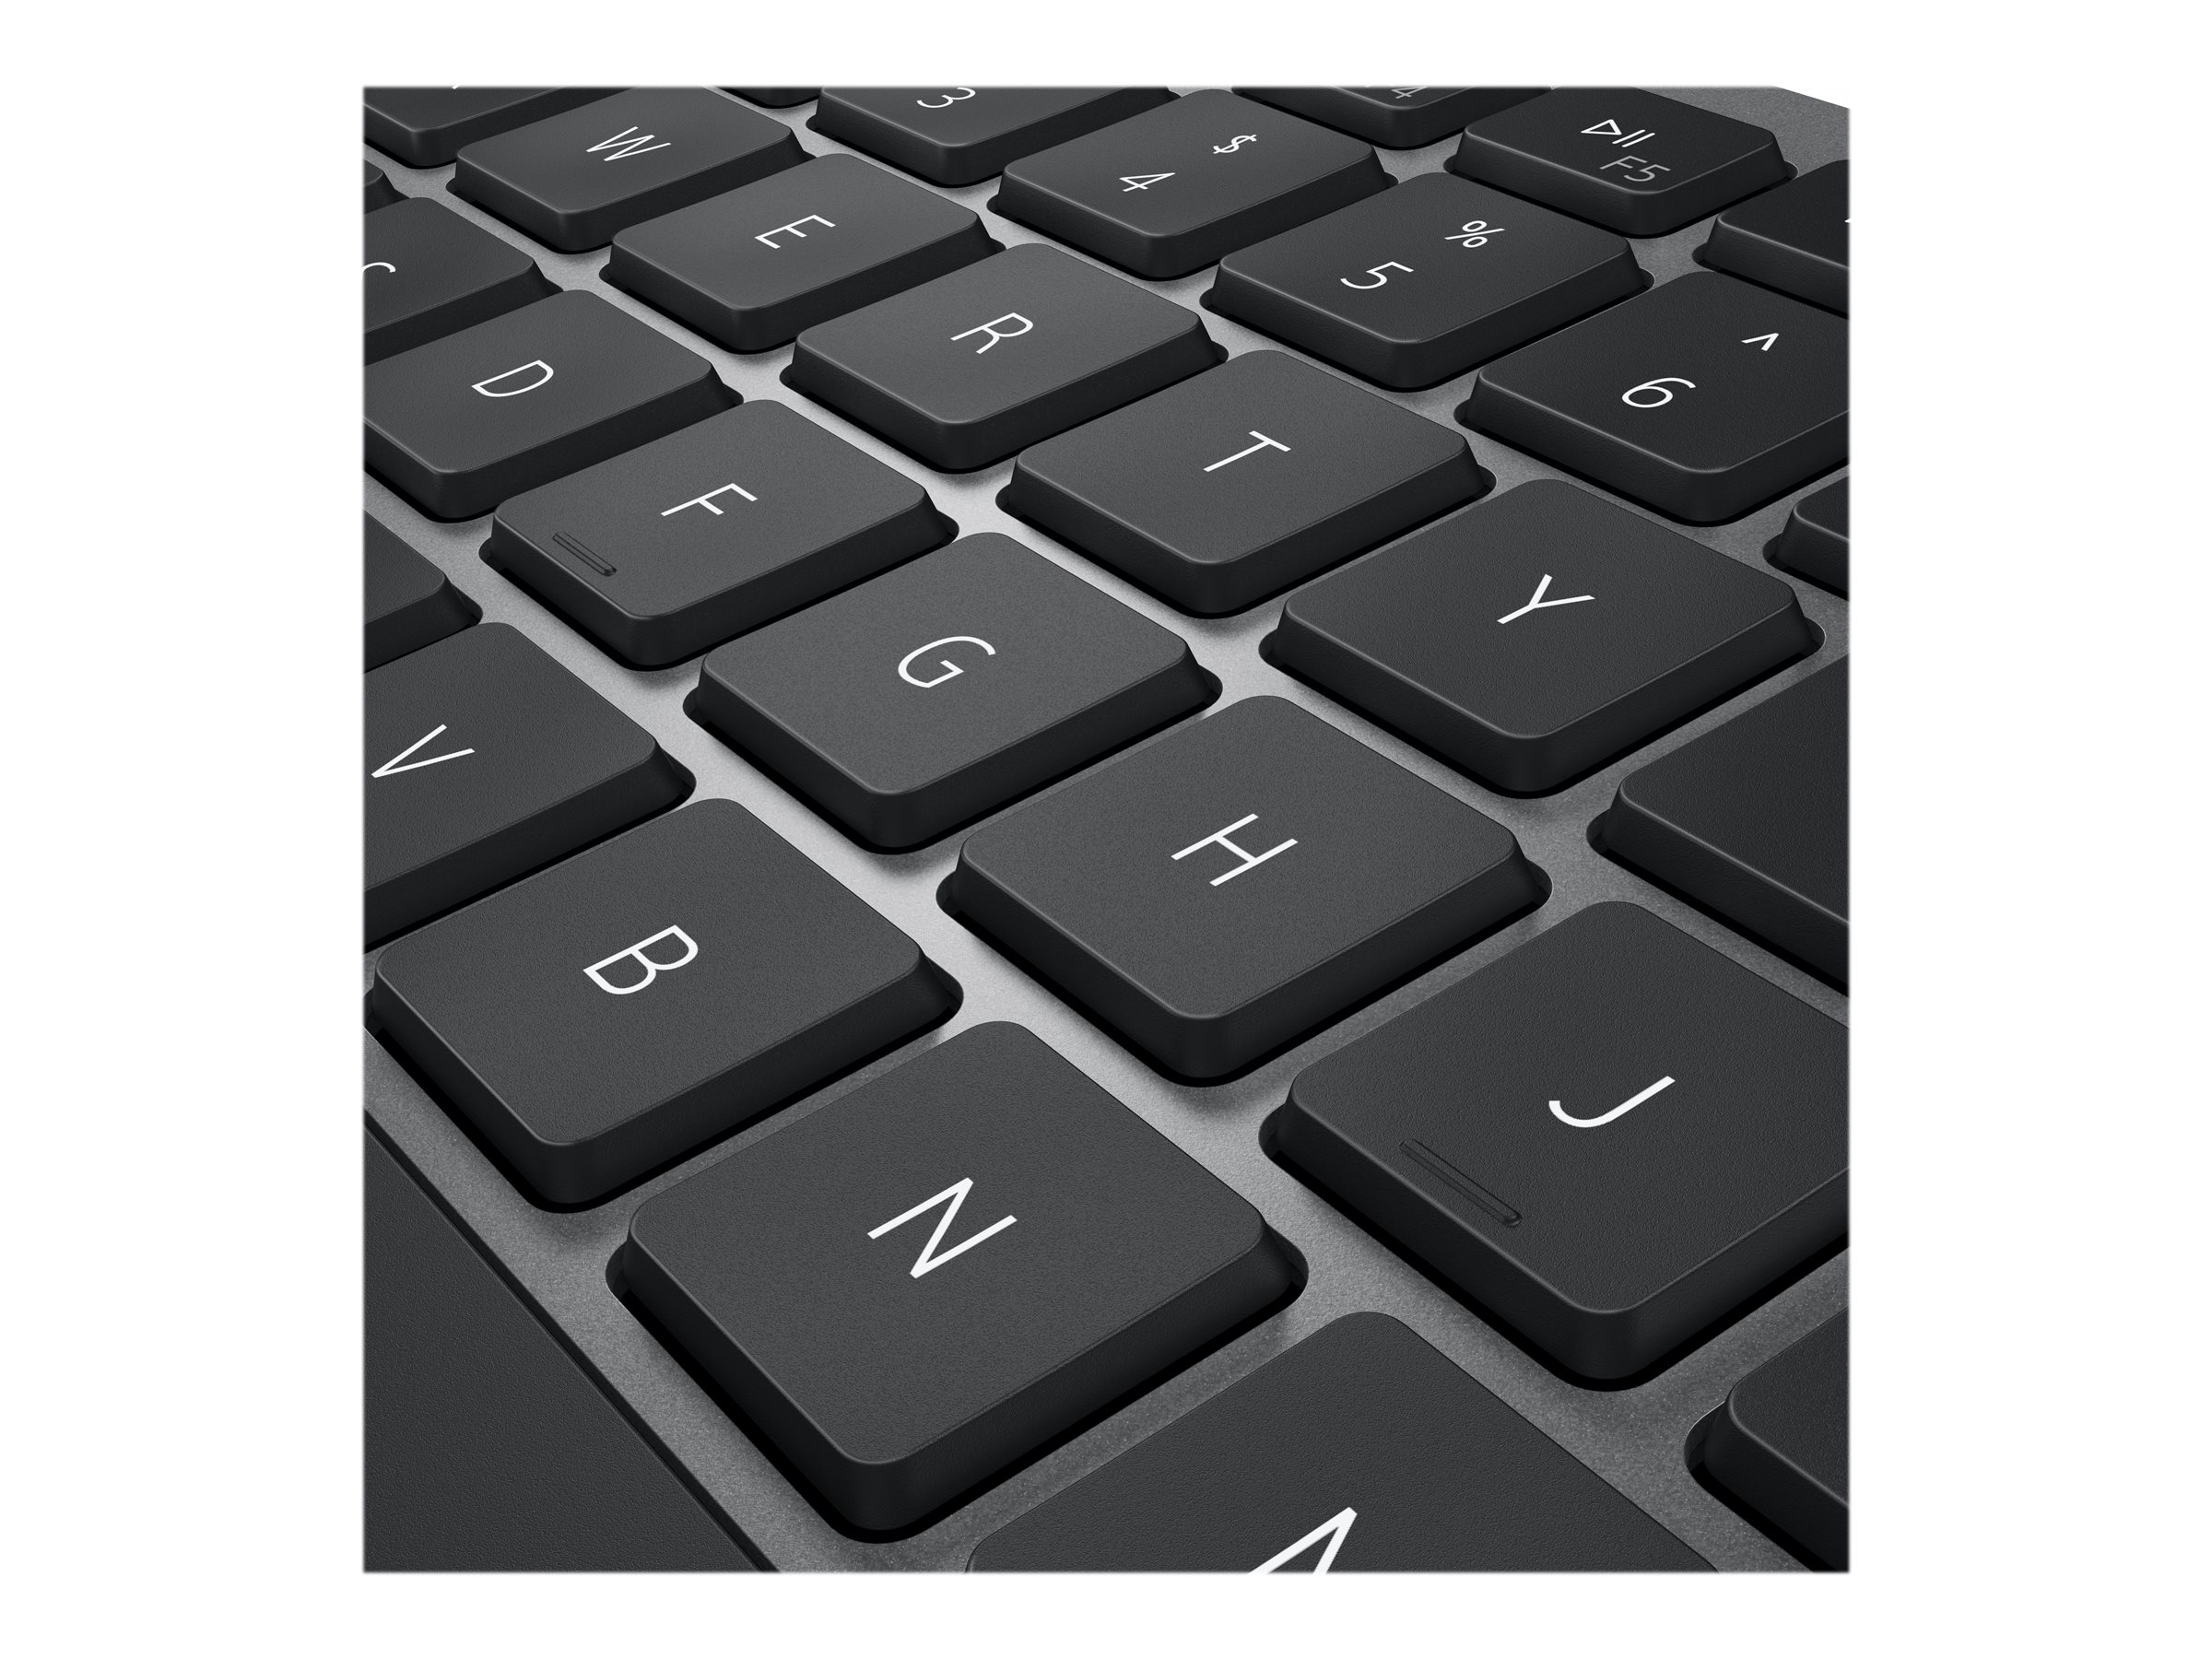 Ensemble clavier et souris sans fil multi-périphériques de Dell